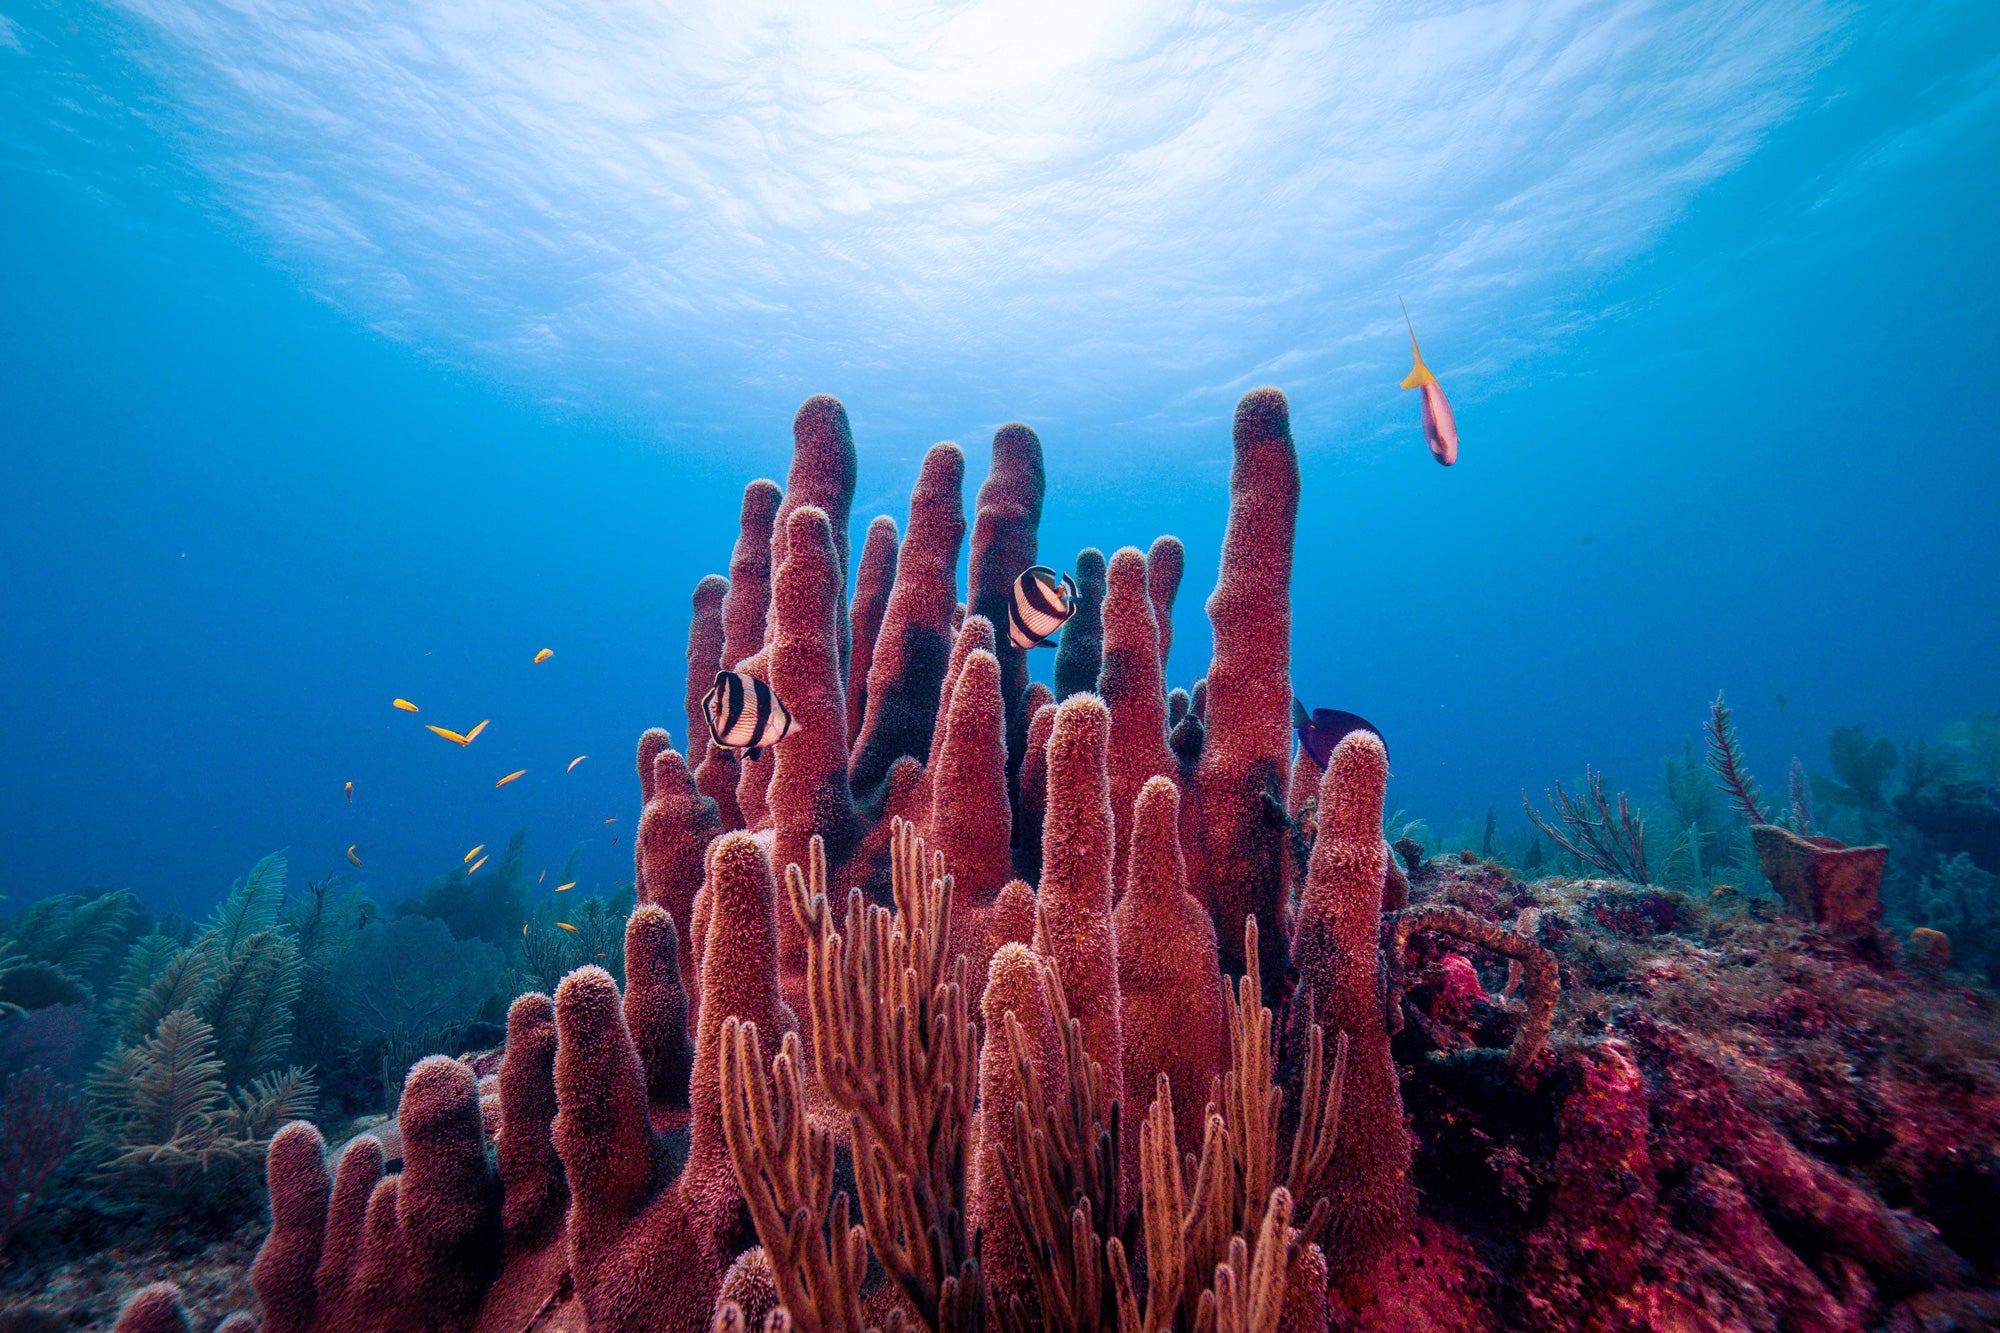 Coral reefs in the ocean